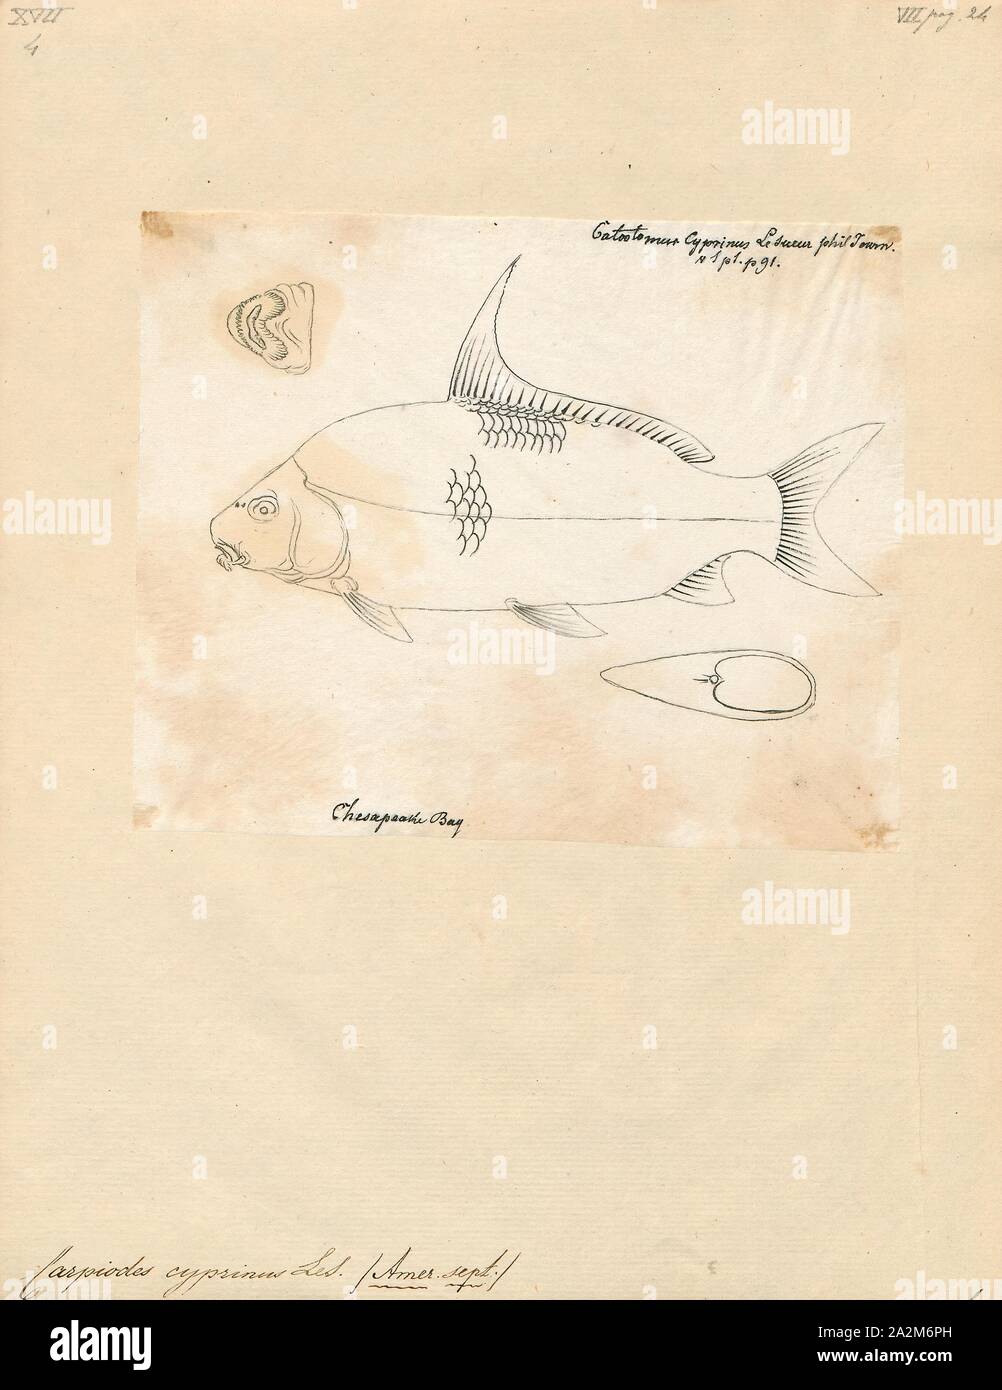 Carpiodes cyprinus, stampa l'quillback (Carpiodes cyprinus) è un tipo di pesci di acqua dolce della famiglia a ventosa. Esso è più profondo e corposo rispetto a quella della maggior parte delle ventose, portando a un aspetto carplike. Esso può essere distinto da carpe dalla mancanza di barbigli attorno alla bocca. Il quillback è a lungo vissuto, con l'età oltre 50 anni documentati., 1700-1880 Foto Stock